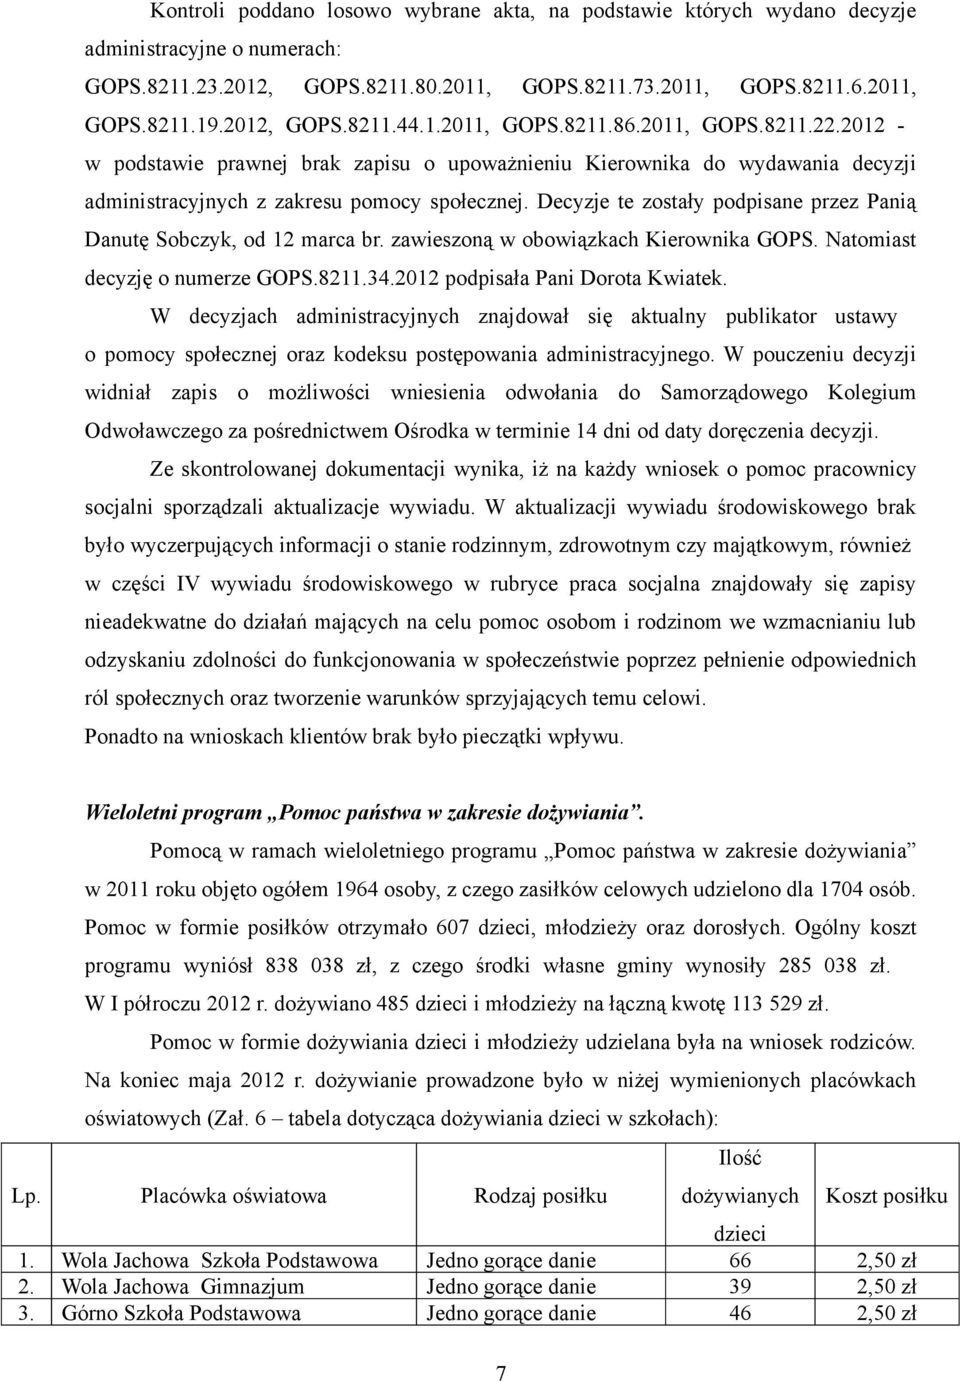 Decyzje te zostały podpisane przez Panią Danutę Sobczyk, od 12 marca br. zawieszoną w obowiązkach Kierownika GOPS. Natomiast decyzję o numerze GOPS.8211.34.2012 podpisała Pani Dorota Kwiatek.